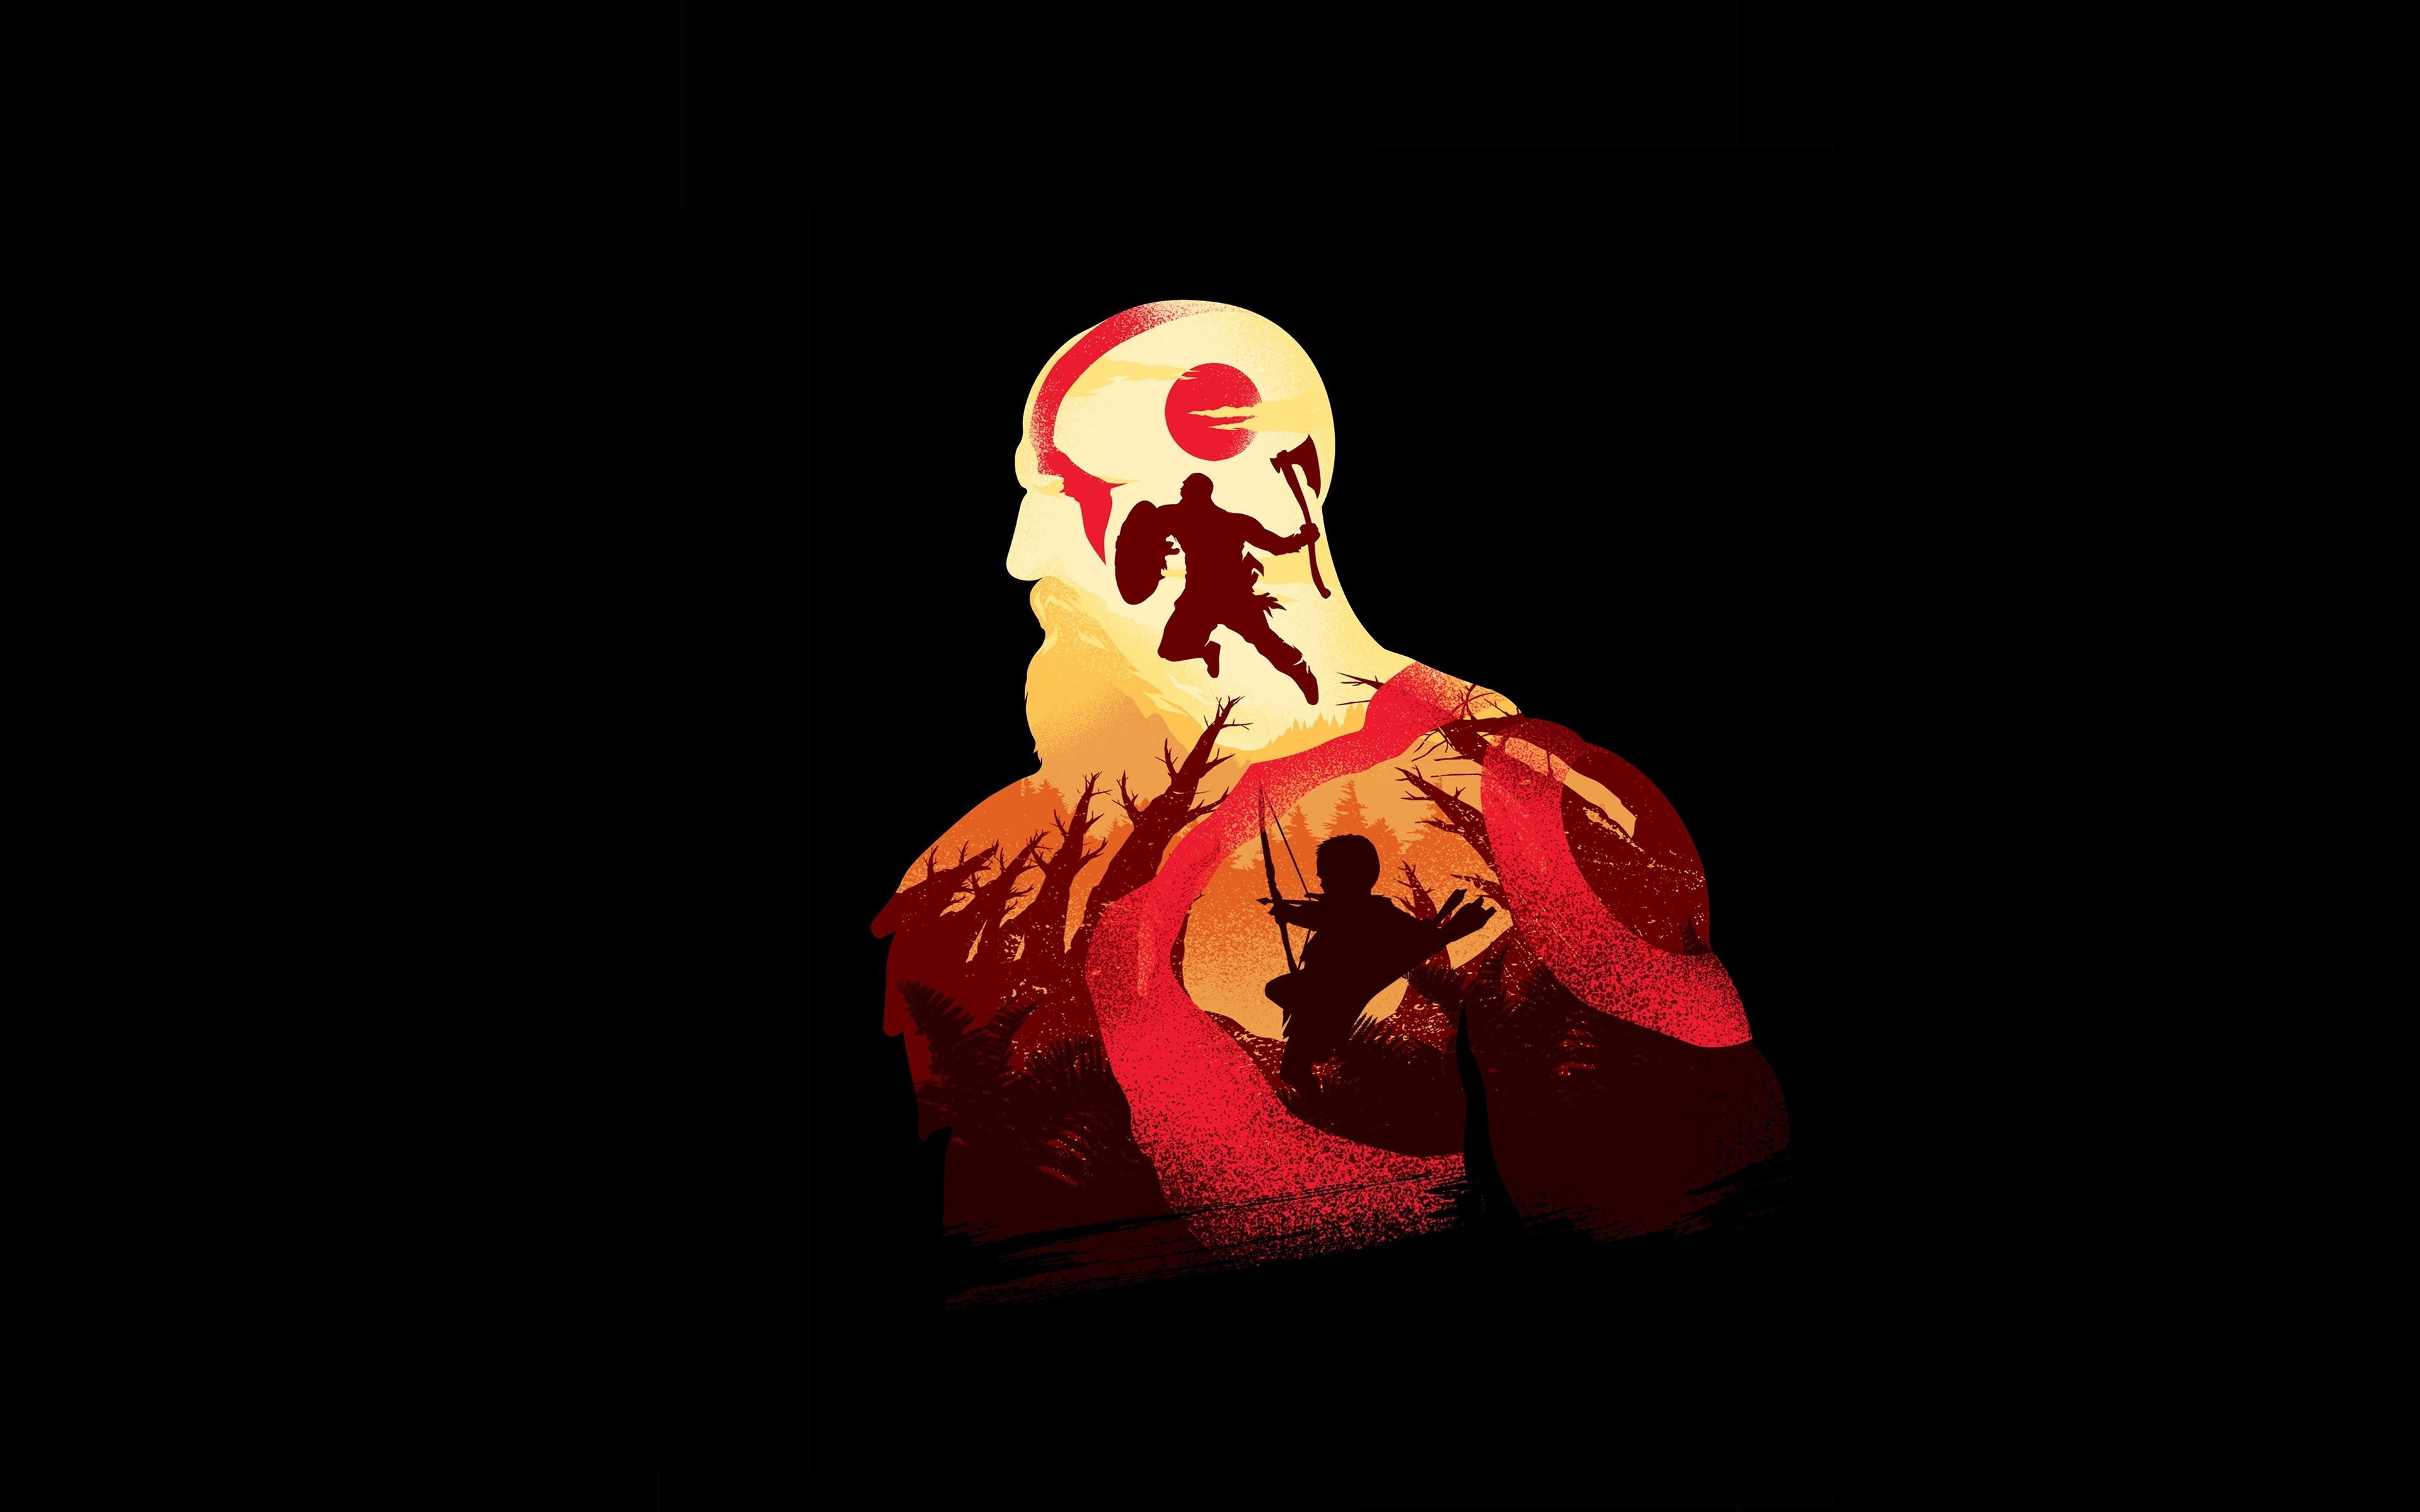 Kratos Wallpaper 4k For Mobile